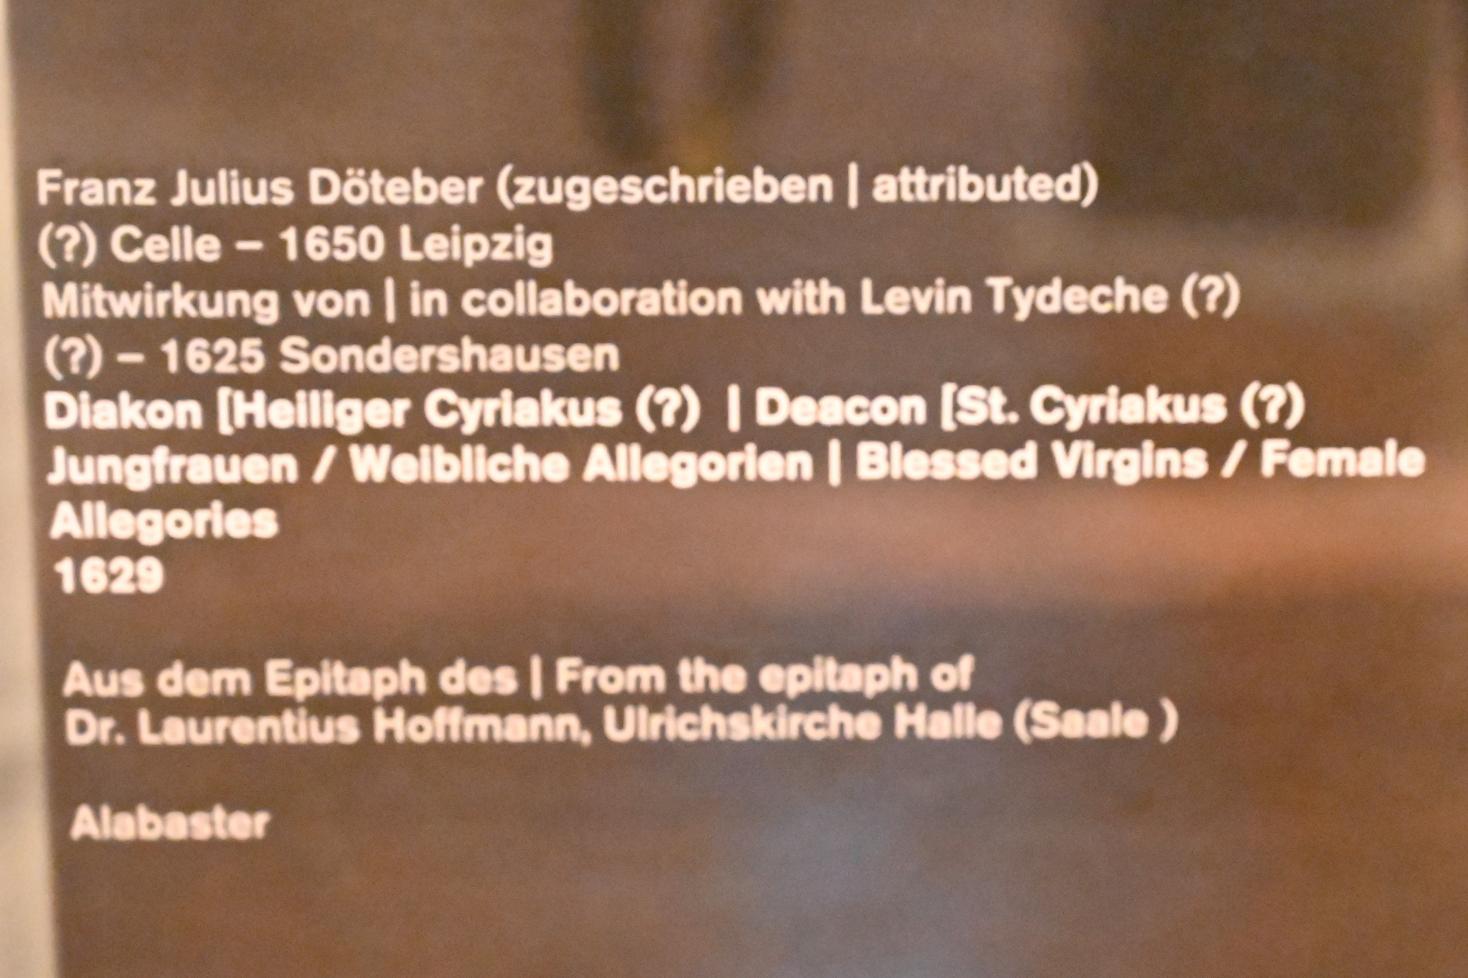 Franz Julius Döteber (1629), Jungfrauen / Weibliche Allegorien, Halle (Saale), Kirche St. Ulrich, jetzt Halle (Saale), Kunstmuseum Moritzburg, Mittelalter Saal 1, 1629, Bild 3/3